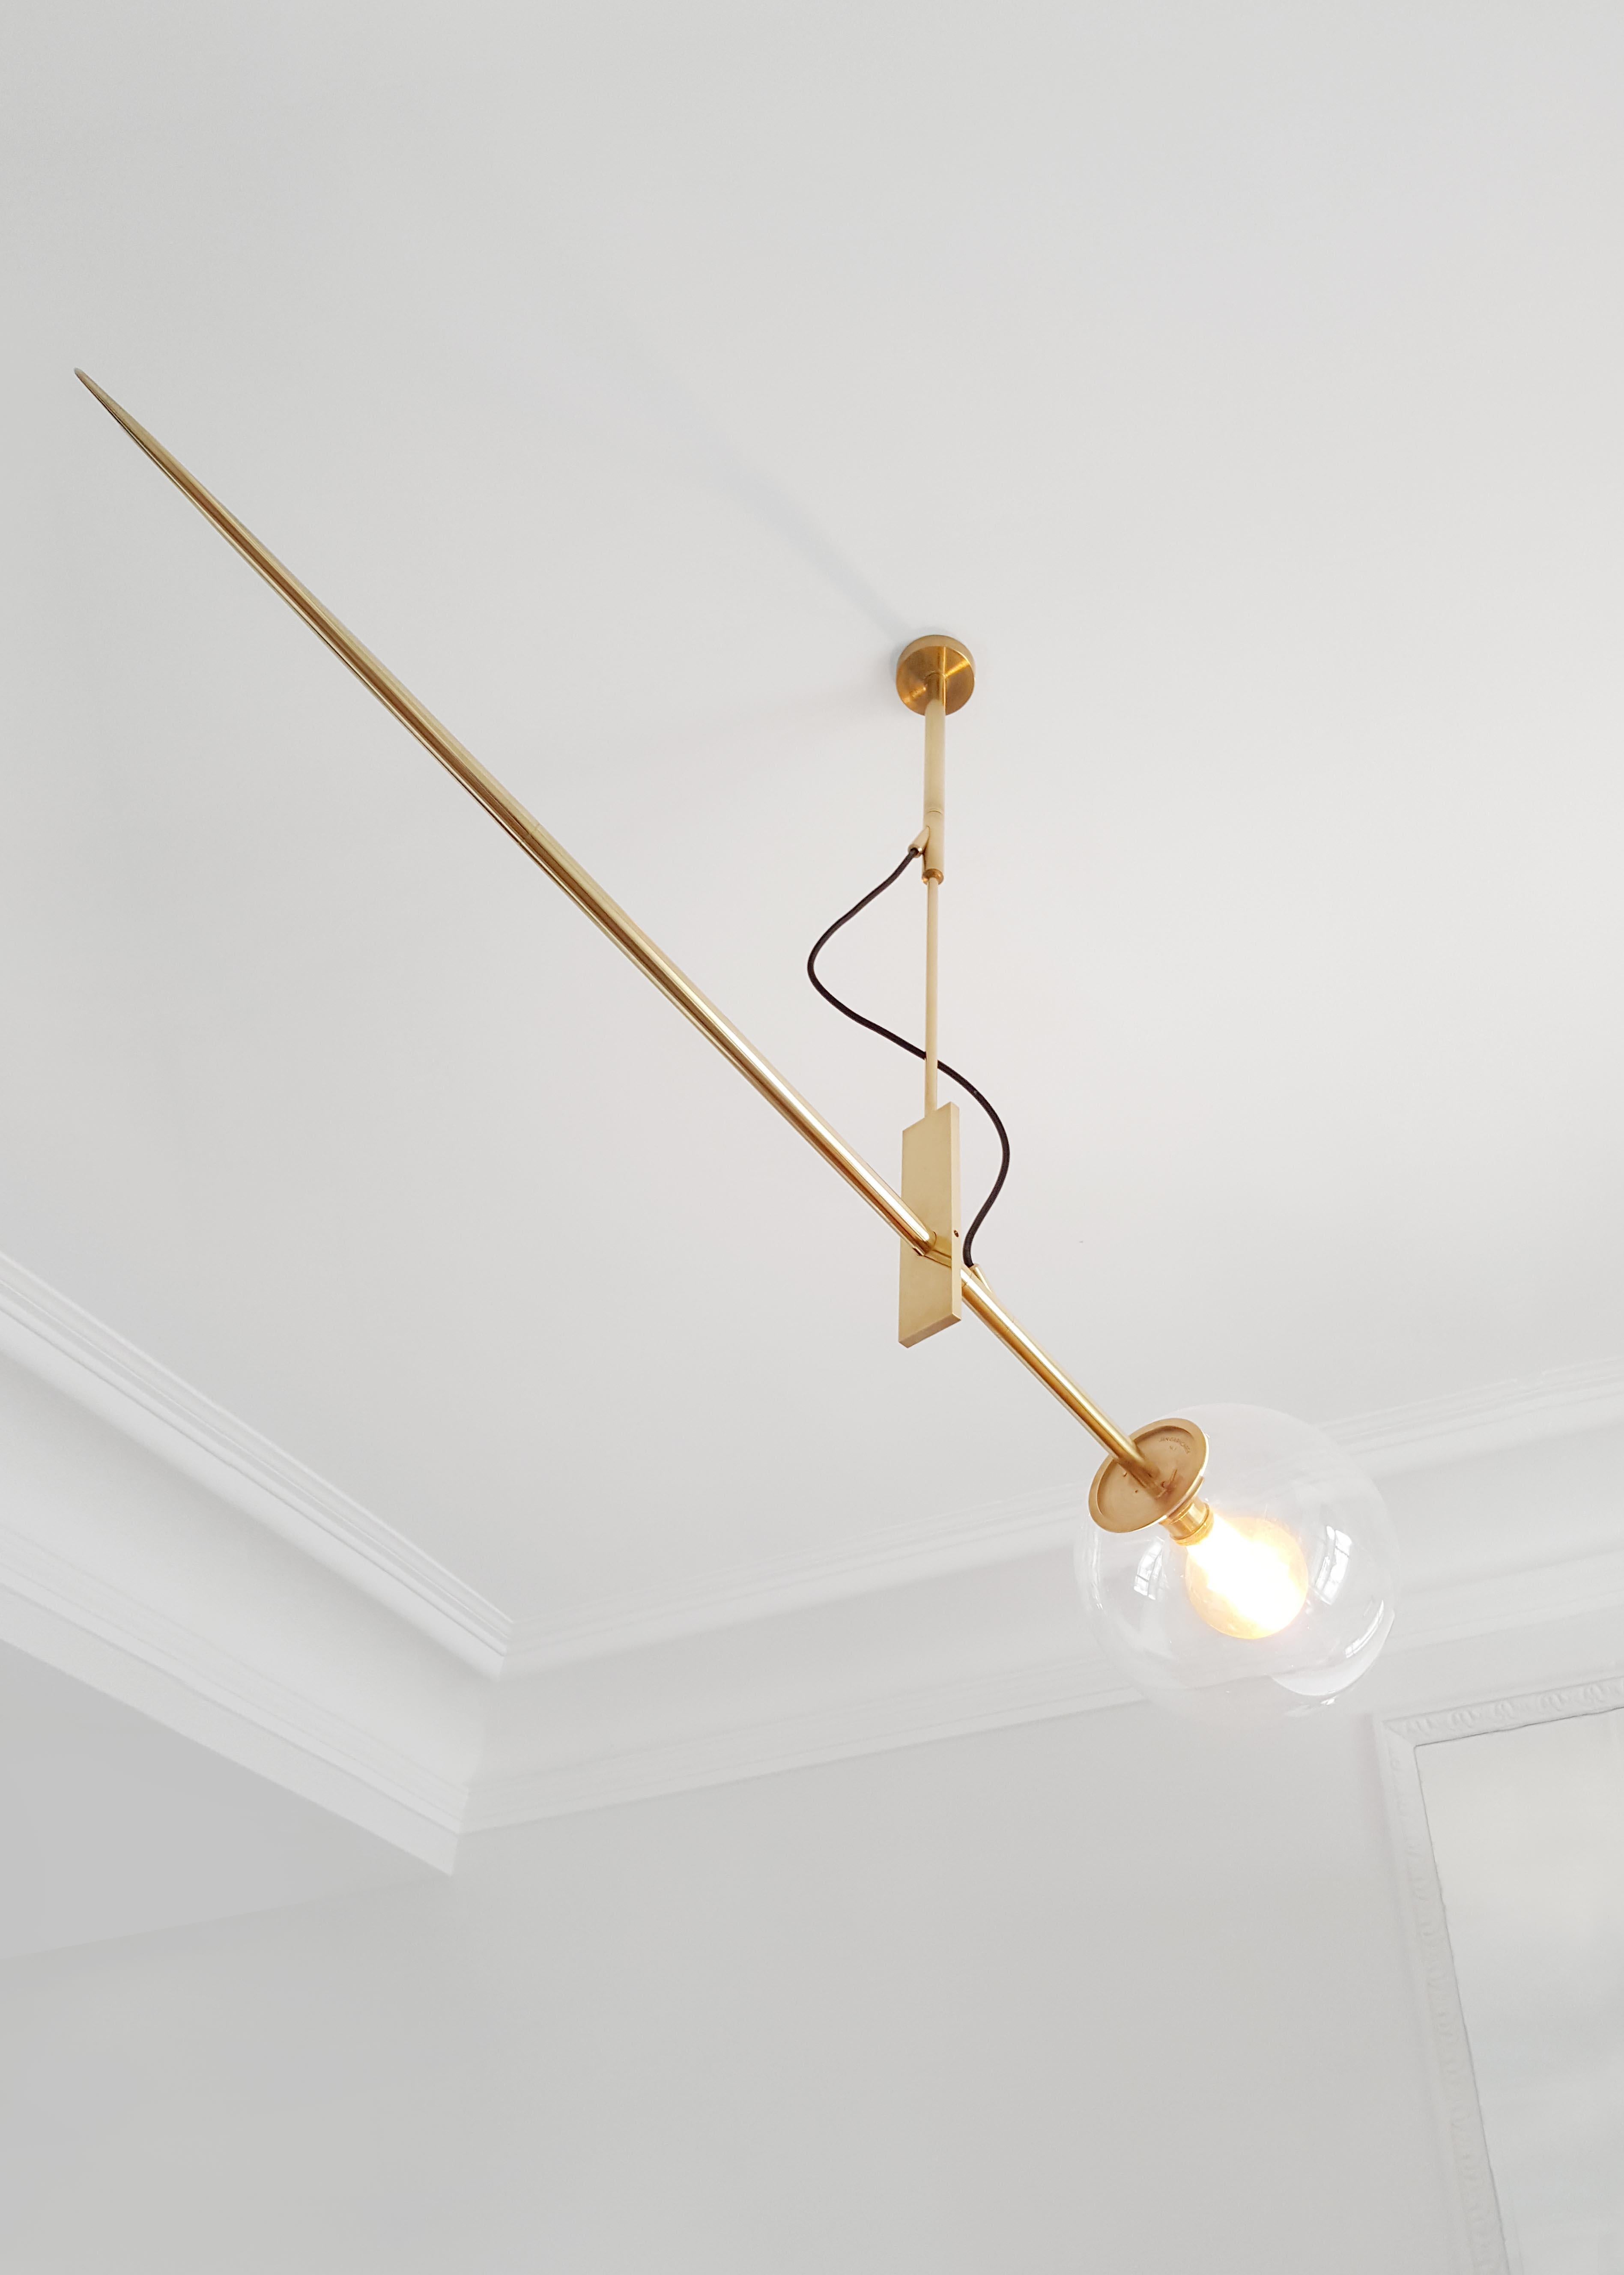 Hasta Brass Hanging Lamp 138, Jan Garncarek 3